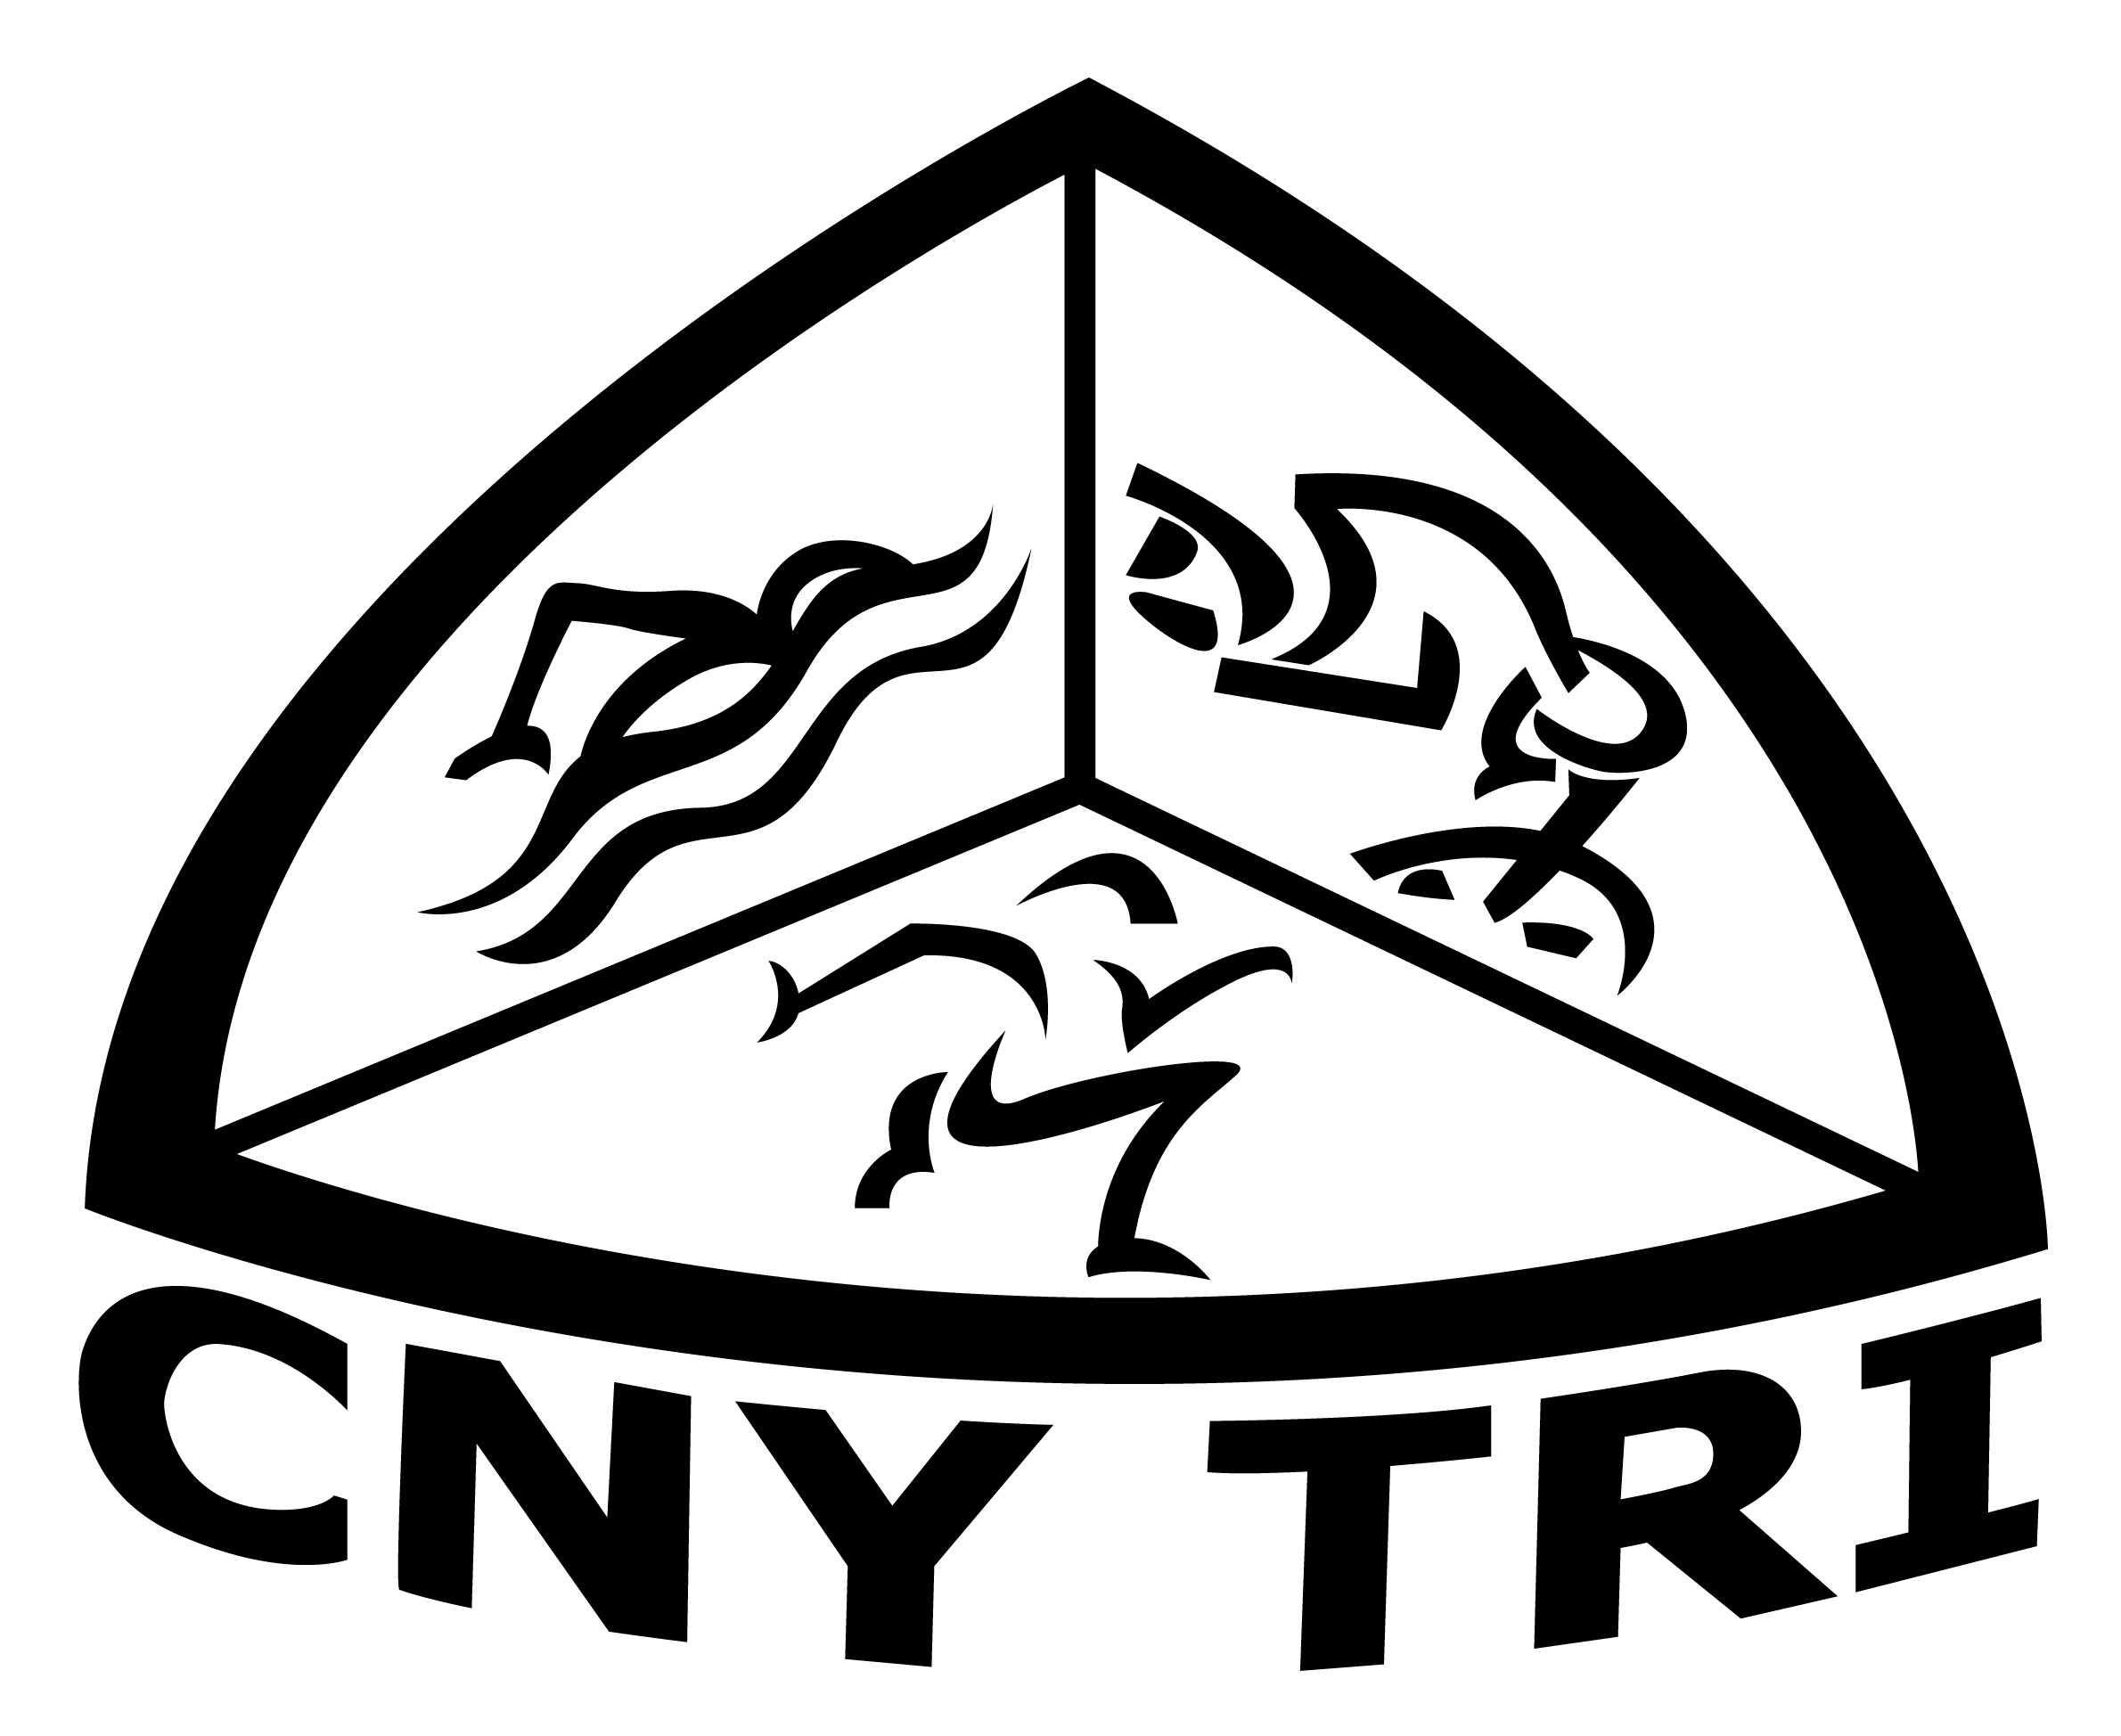 CNY Triathlon Club on Facebook